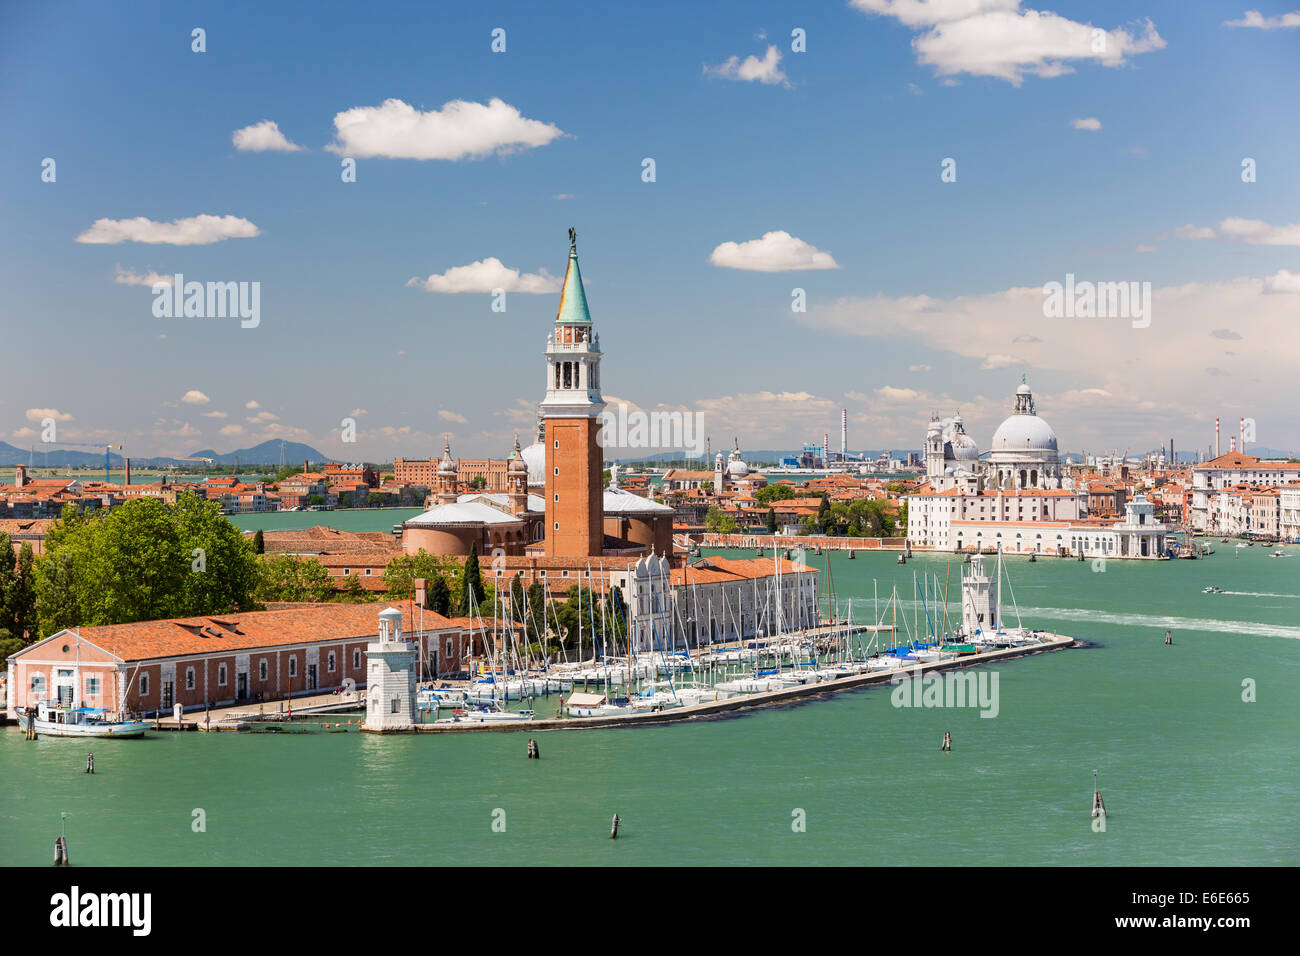 San Giorgio Maggiore Island & Giudecca Canal, Venice Italy Stock Photo